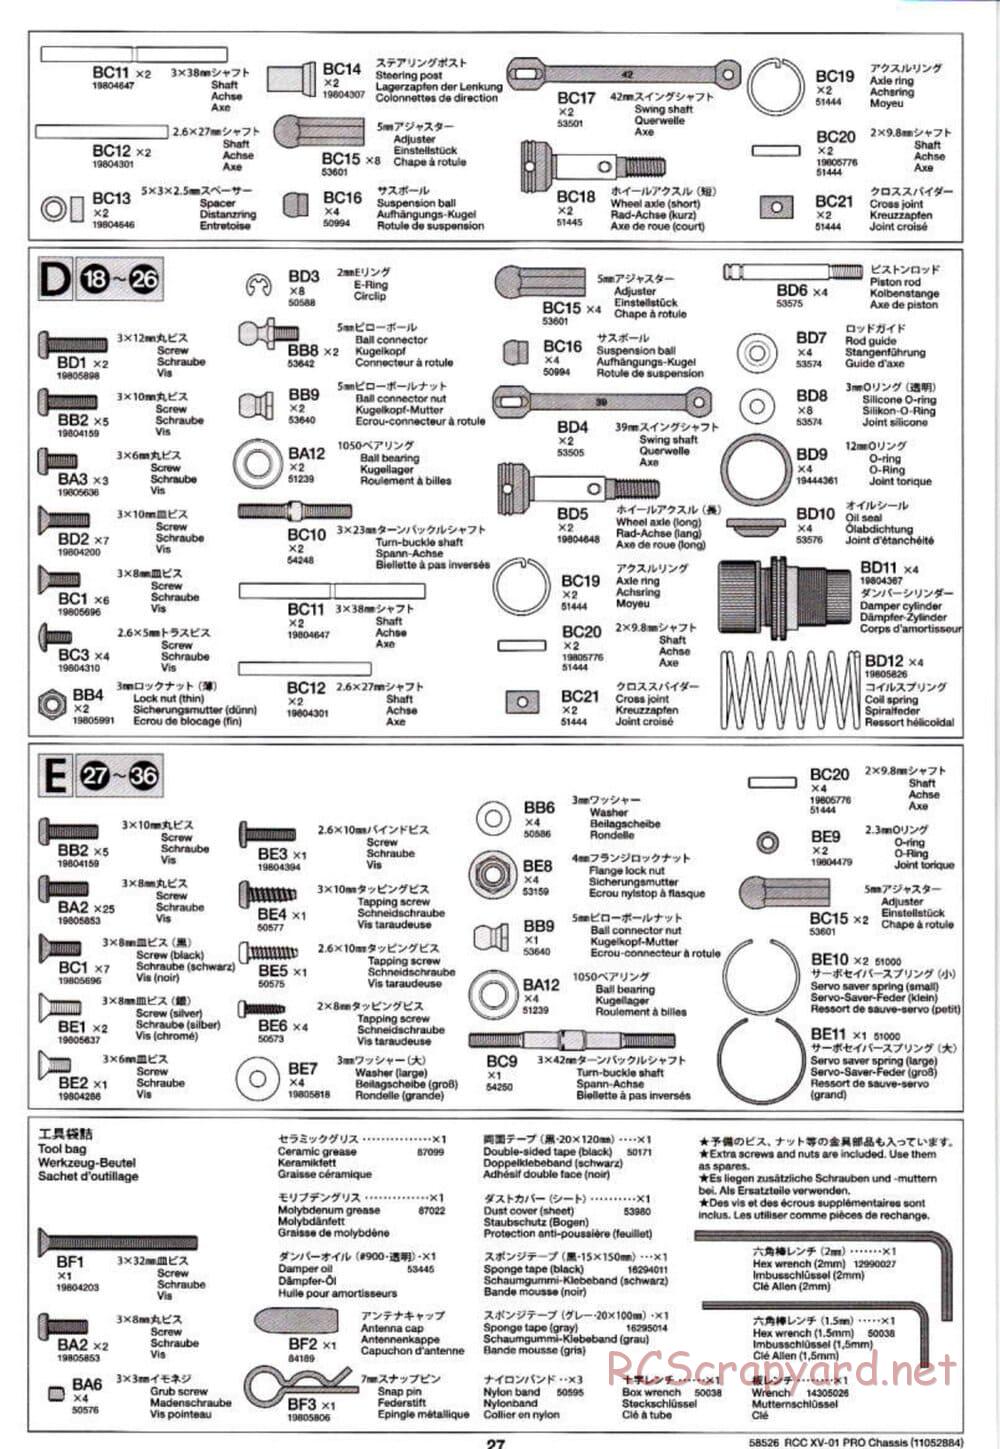 Tamiya - XV-01 PRO Chassis - Manual - Page 27